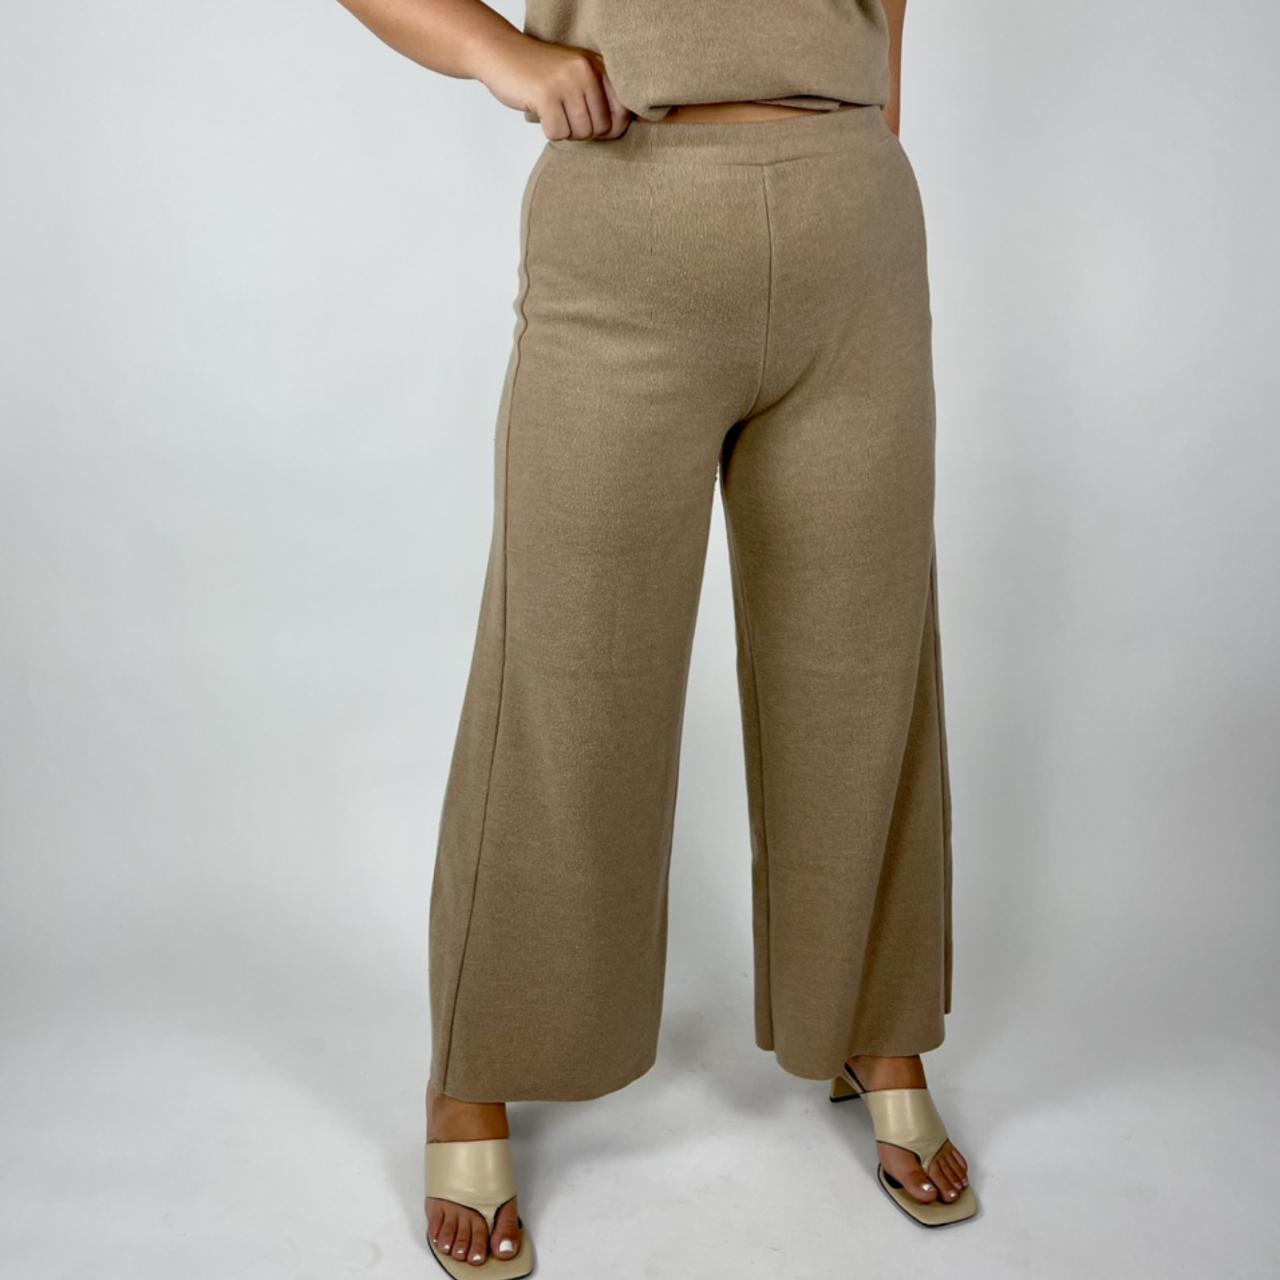 Zara Women's Tan Suit (4)